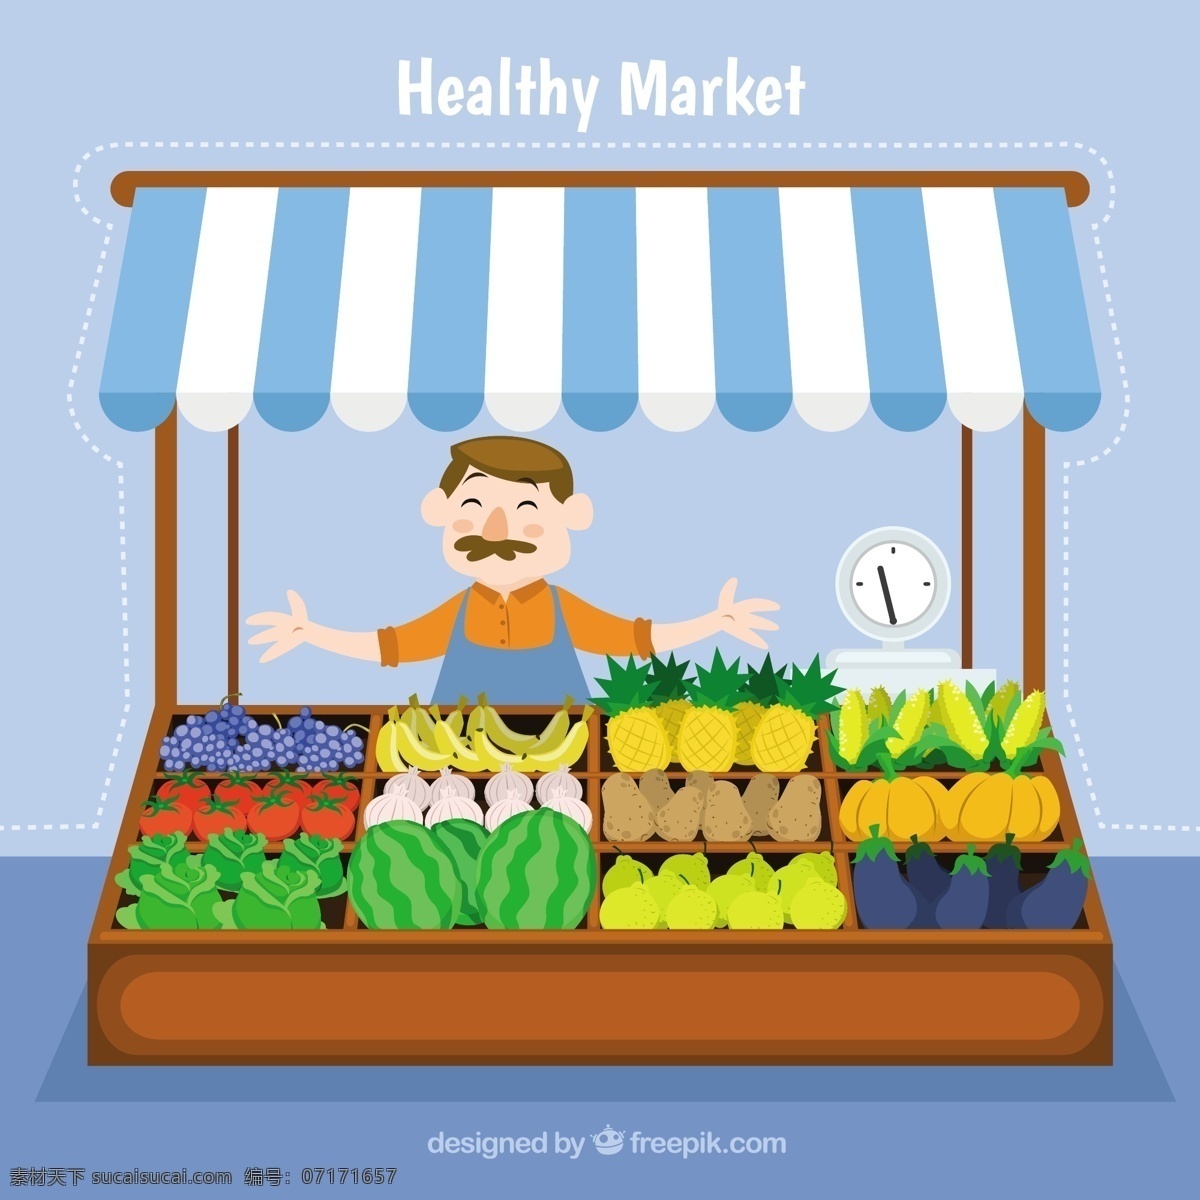 有机蔬菜图标 食品 商业 水果 蔬菜 有机 市场 健康 有机食品 希思 fodd